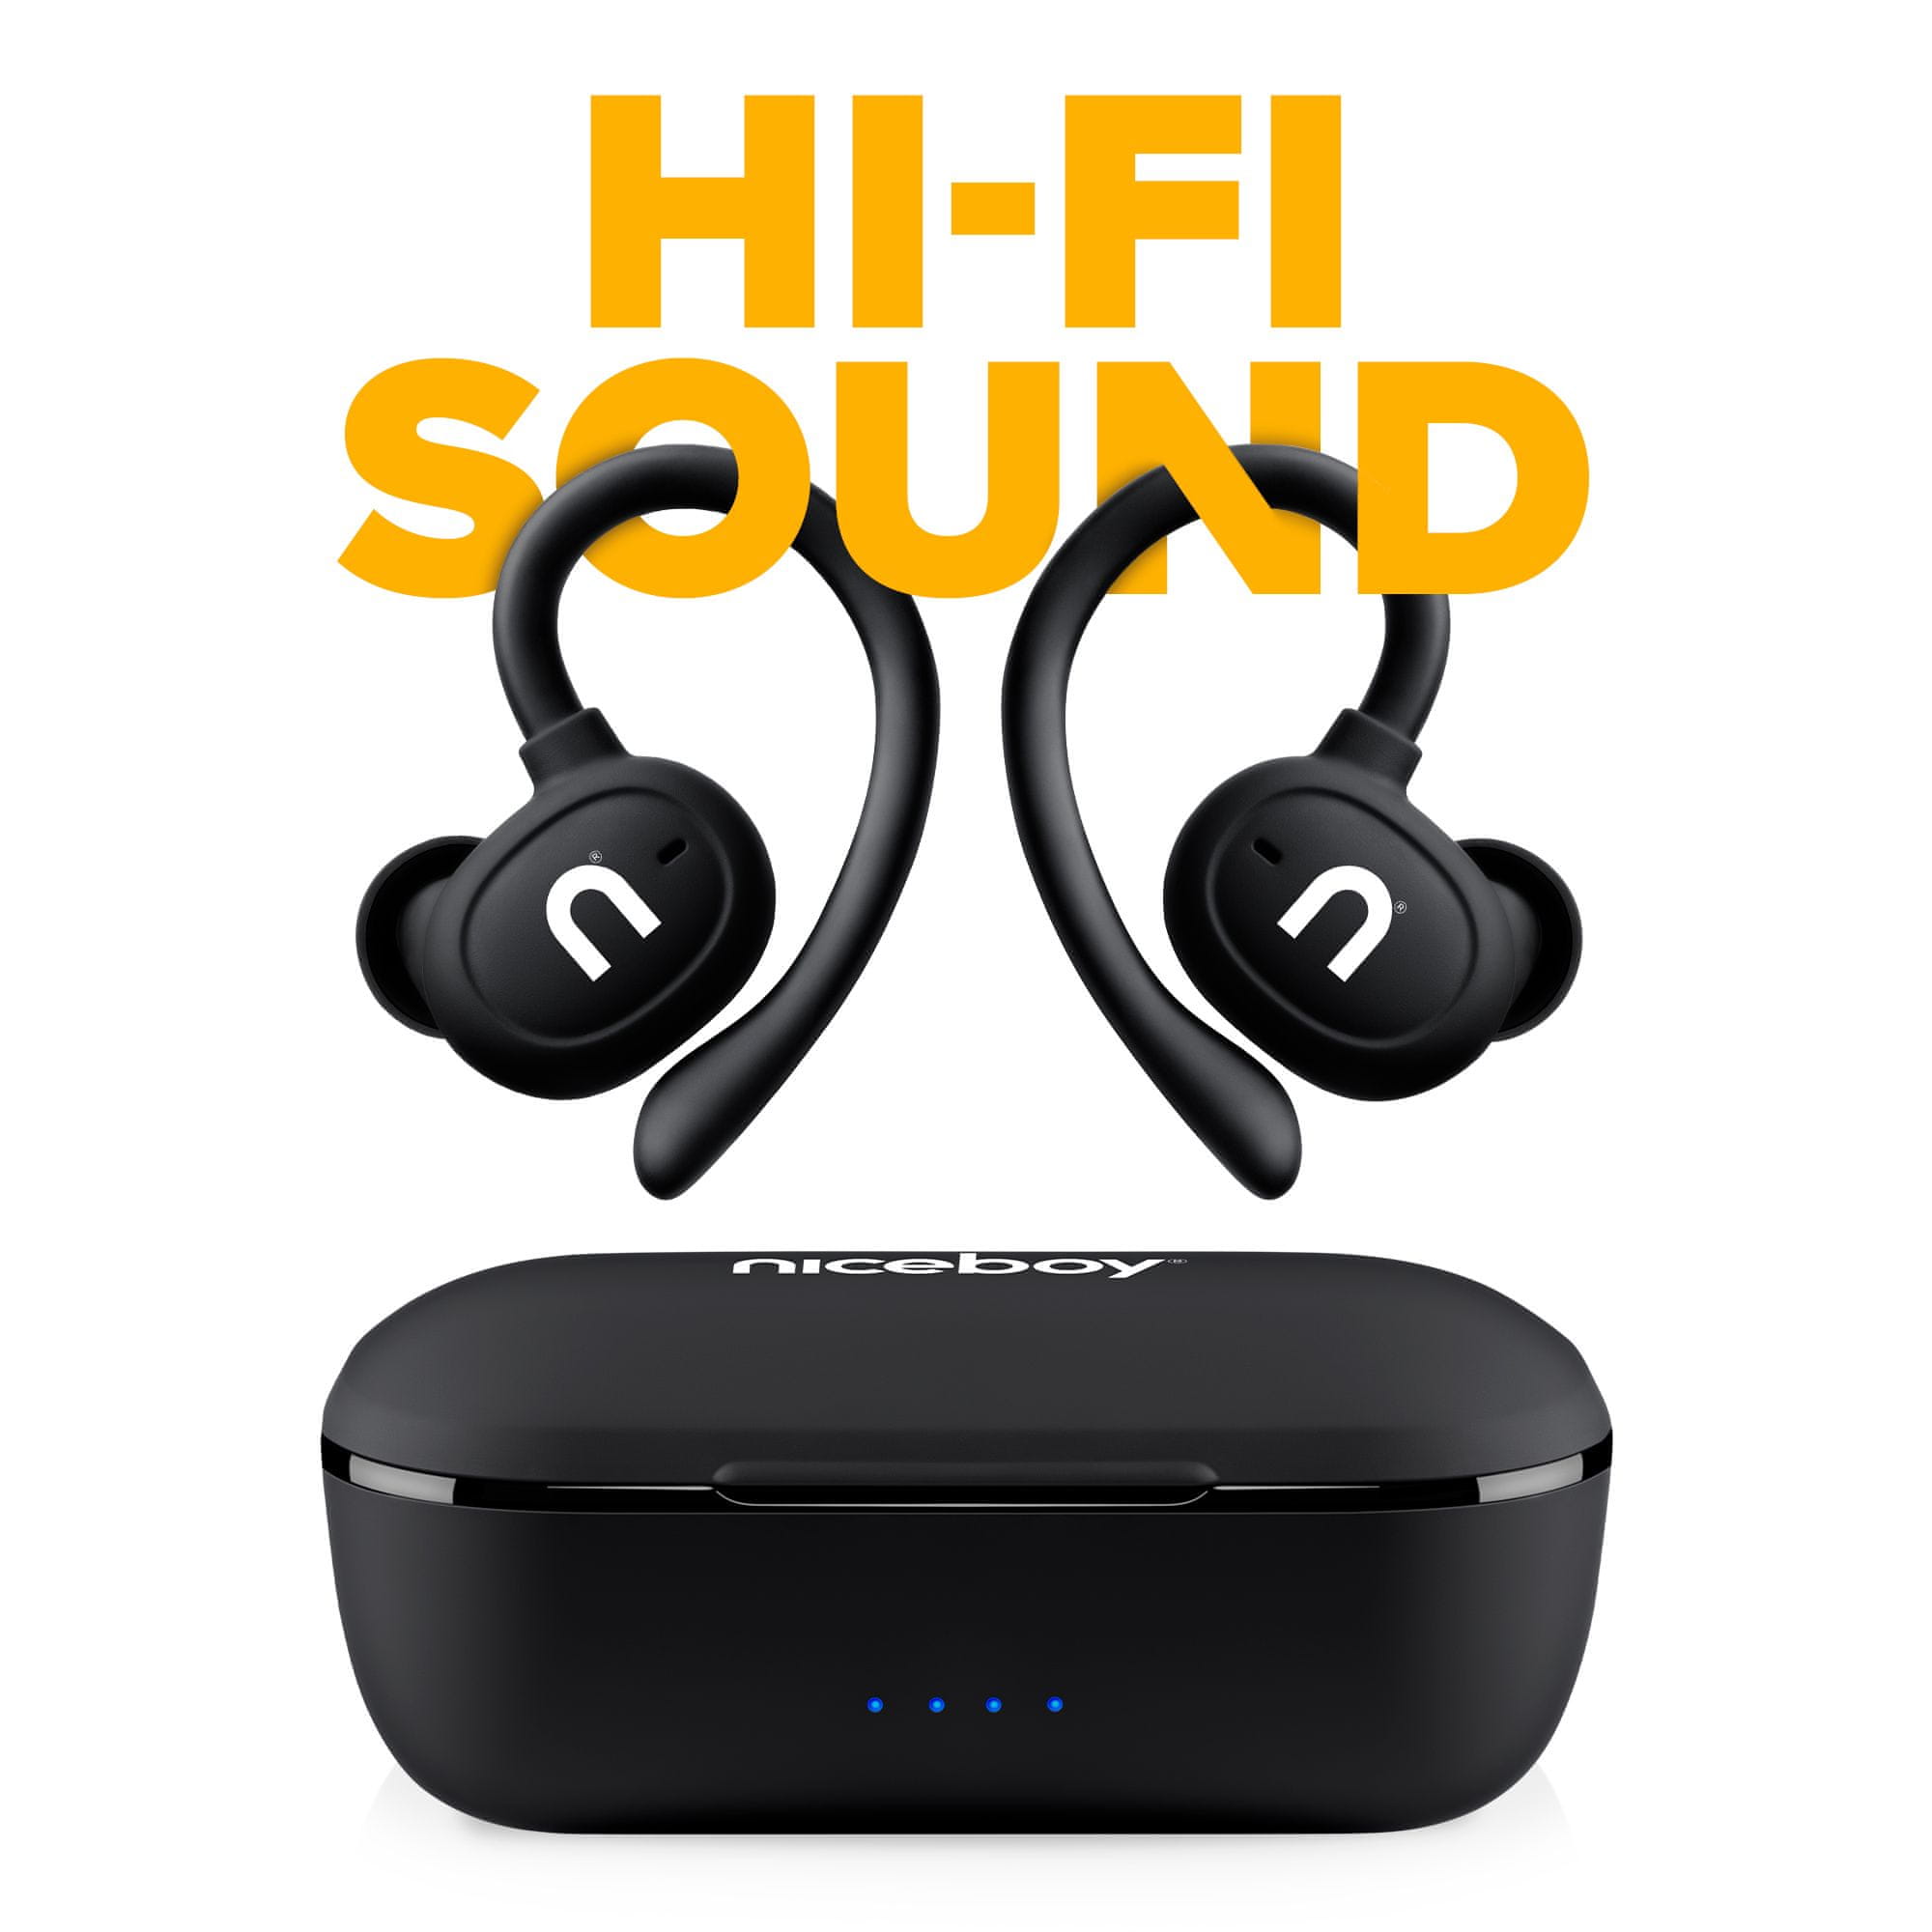  niceboy hive airsport 3 max Bluetooth fejhallgató handsfree mikrofon alkalmazás ion nagyszerű hangzás hosszú akkumulátor üzemidő hangvezérlés könnyű konstrukció 